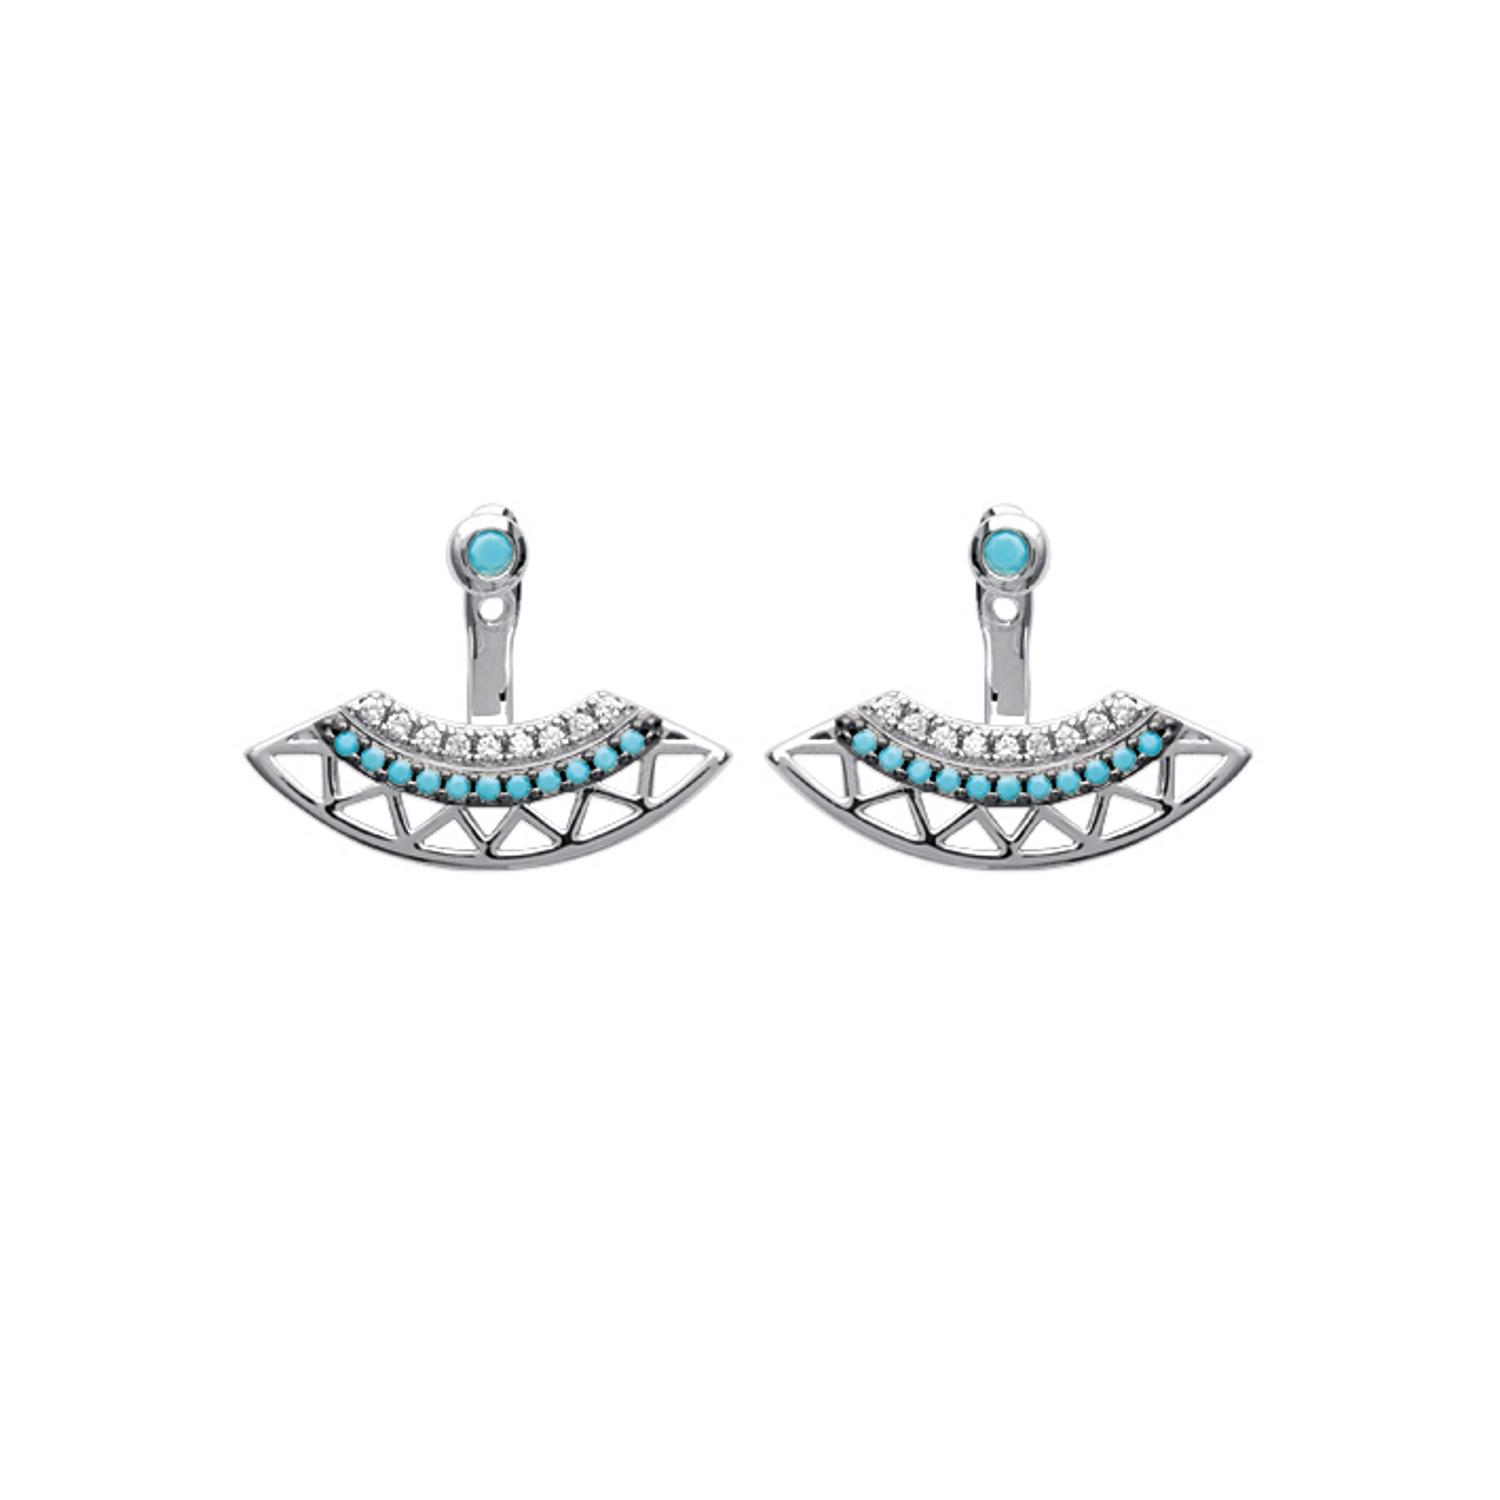 Boucles d'oreilles en argent 925/000 rhodié, oxyde de zirconium et pierre d'imitation turquoise. Pendantes Turquoise  Adolescent Adulte Femme Fille Indémodable 